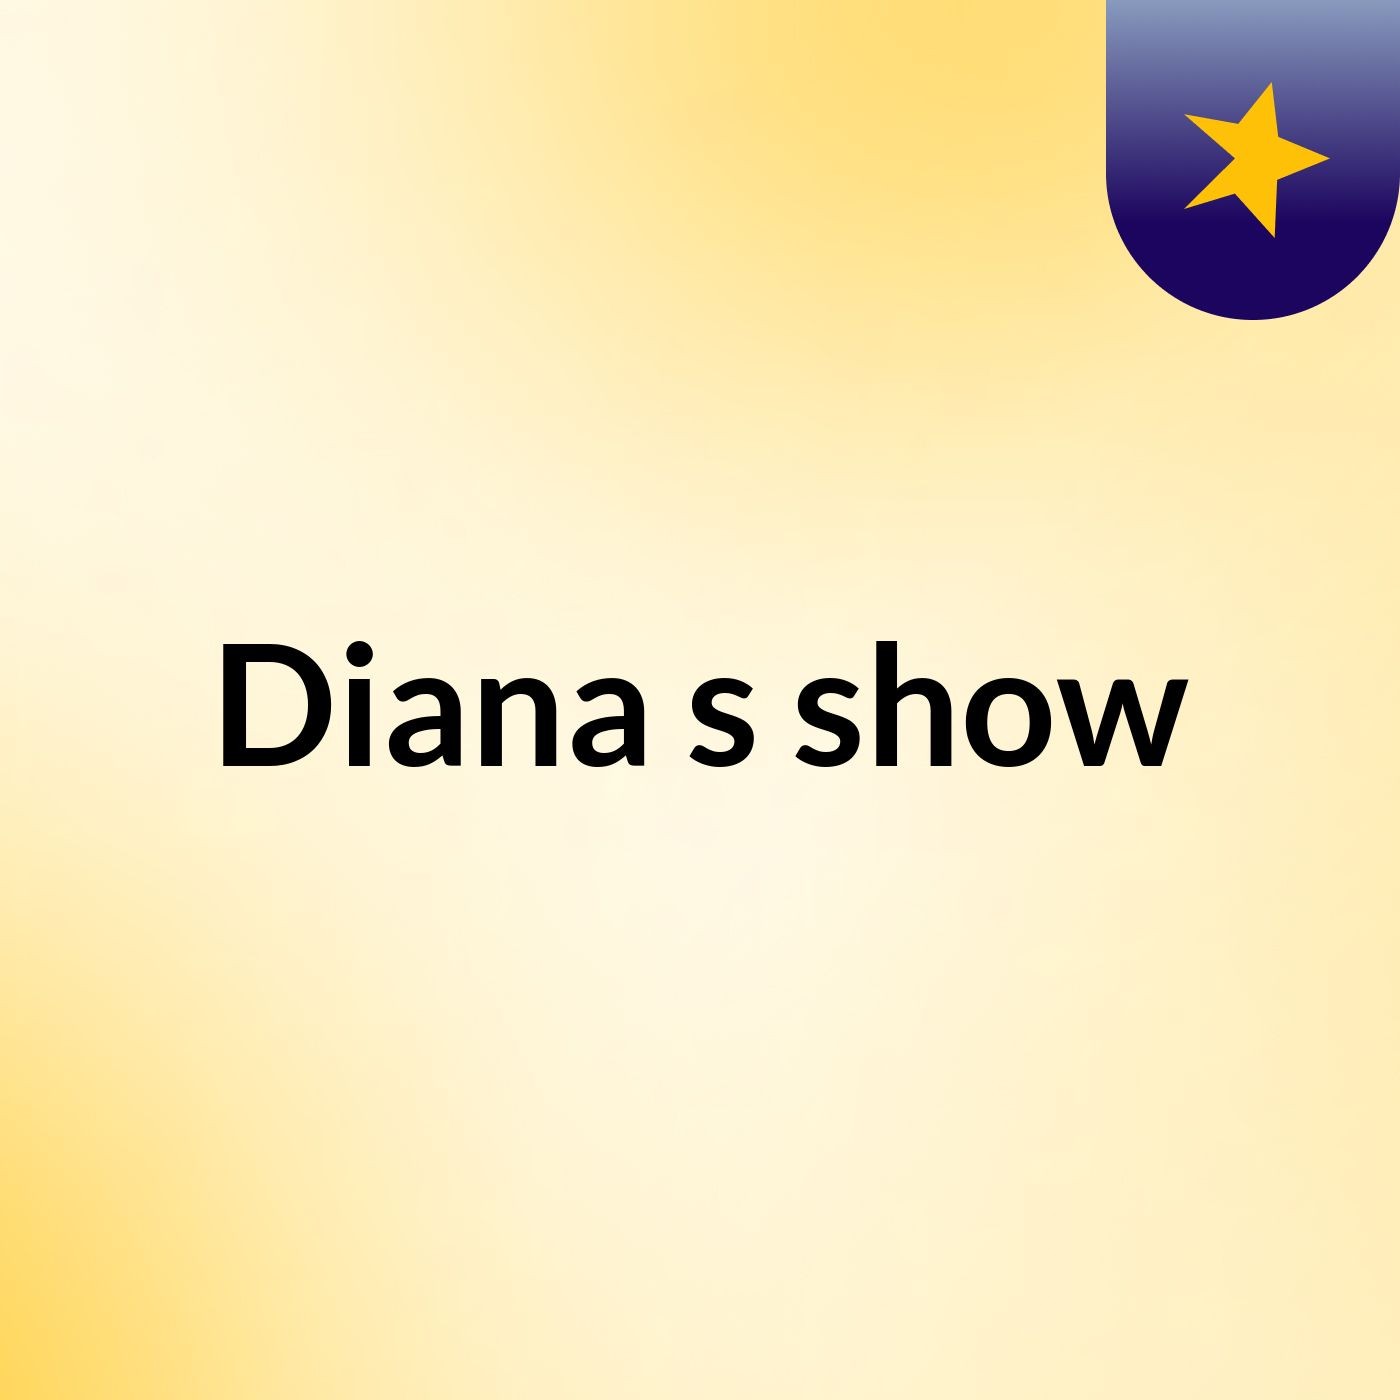 Diana's show